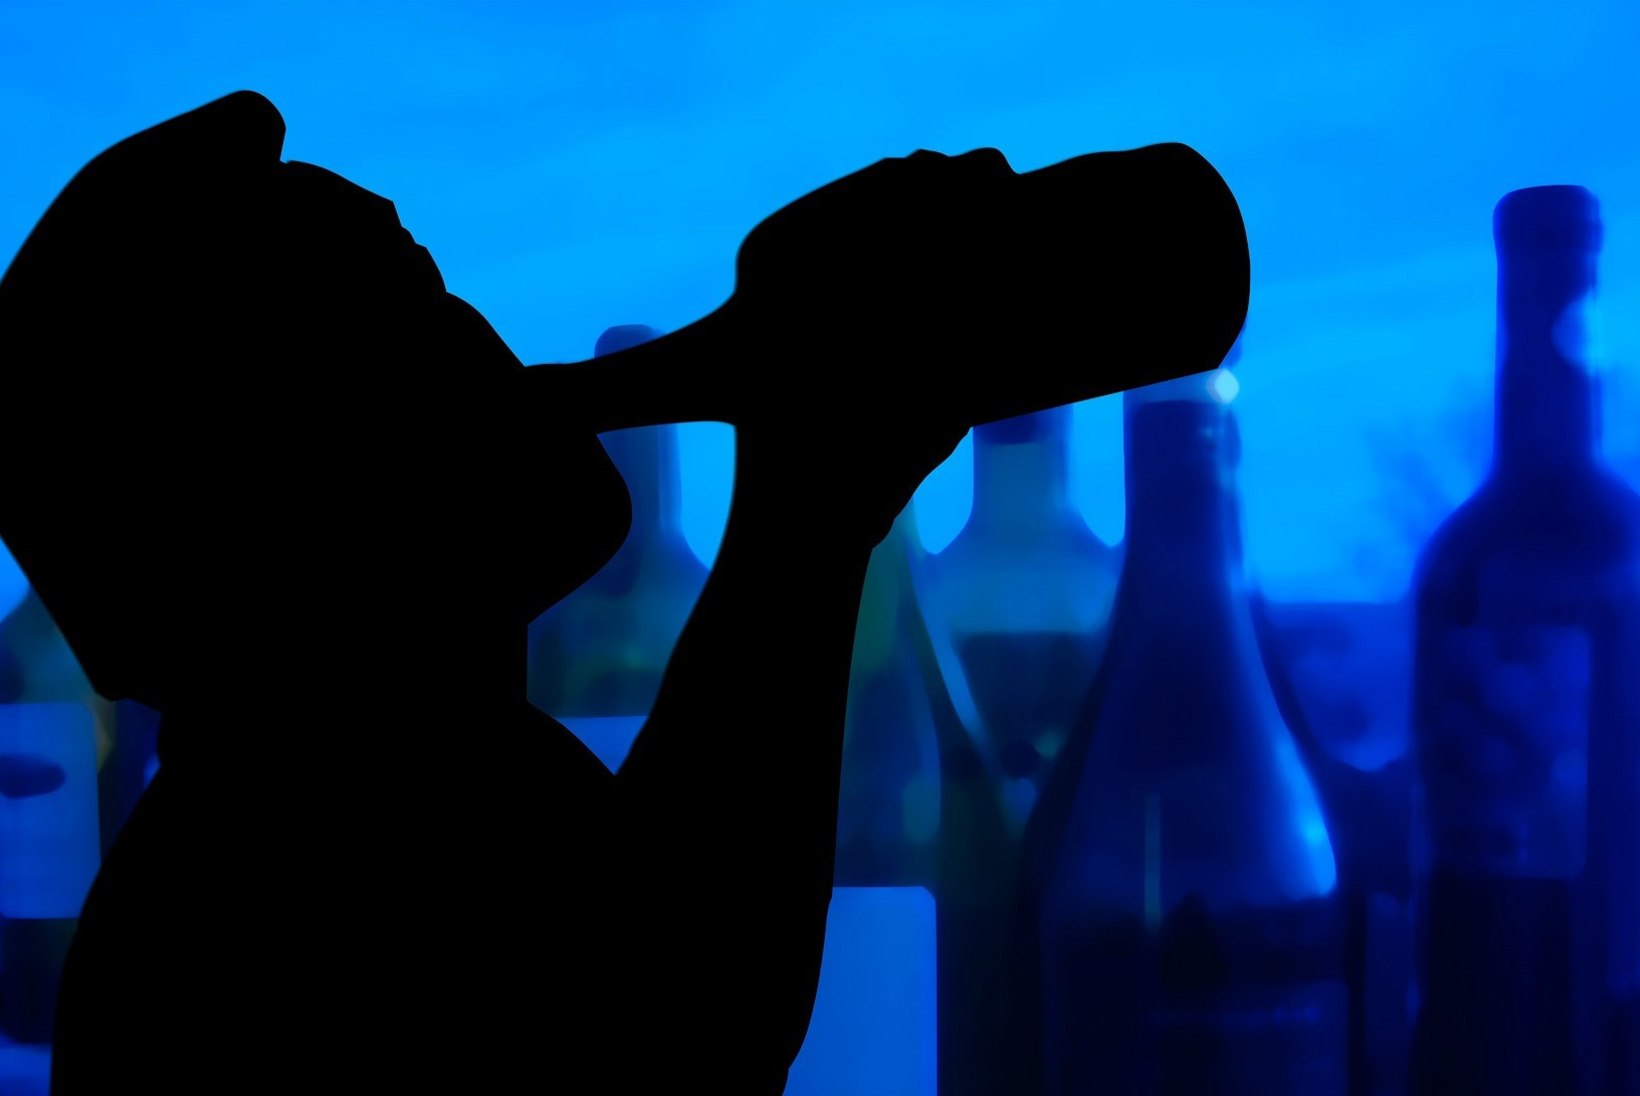 TERVISE ARENGU INSTITUUDI JUHT: „Alkoholisõltuvus ei ole süütegu, kuid joobes juhtimine on.“